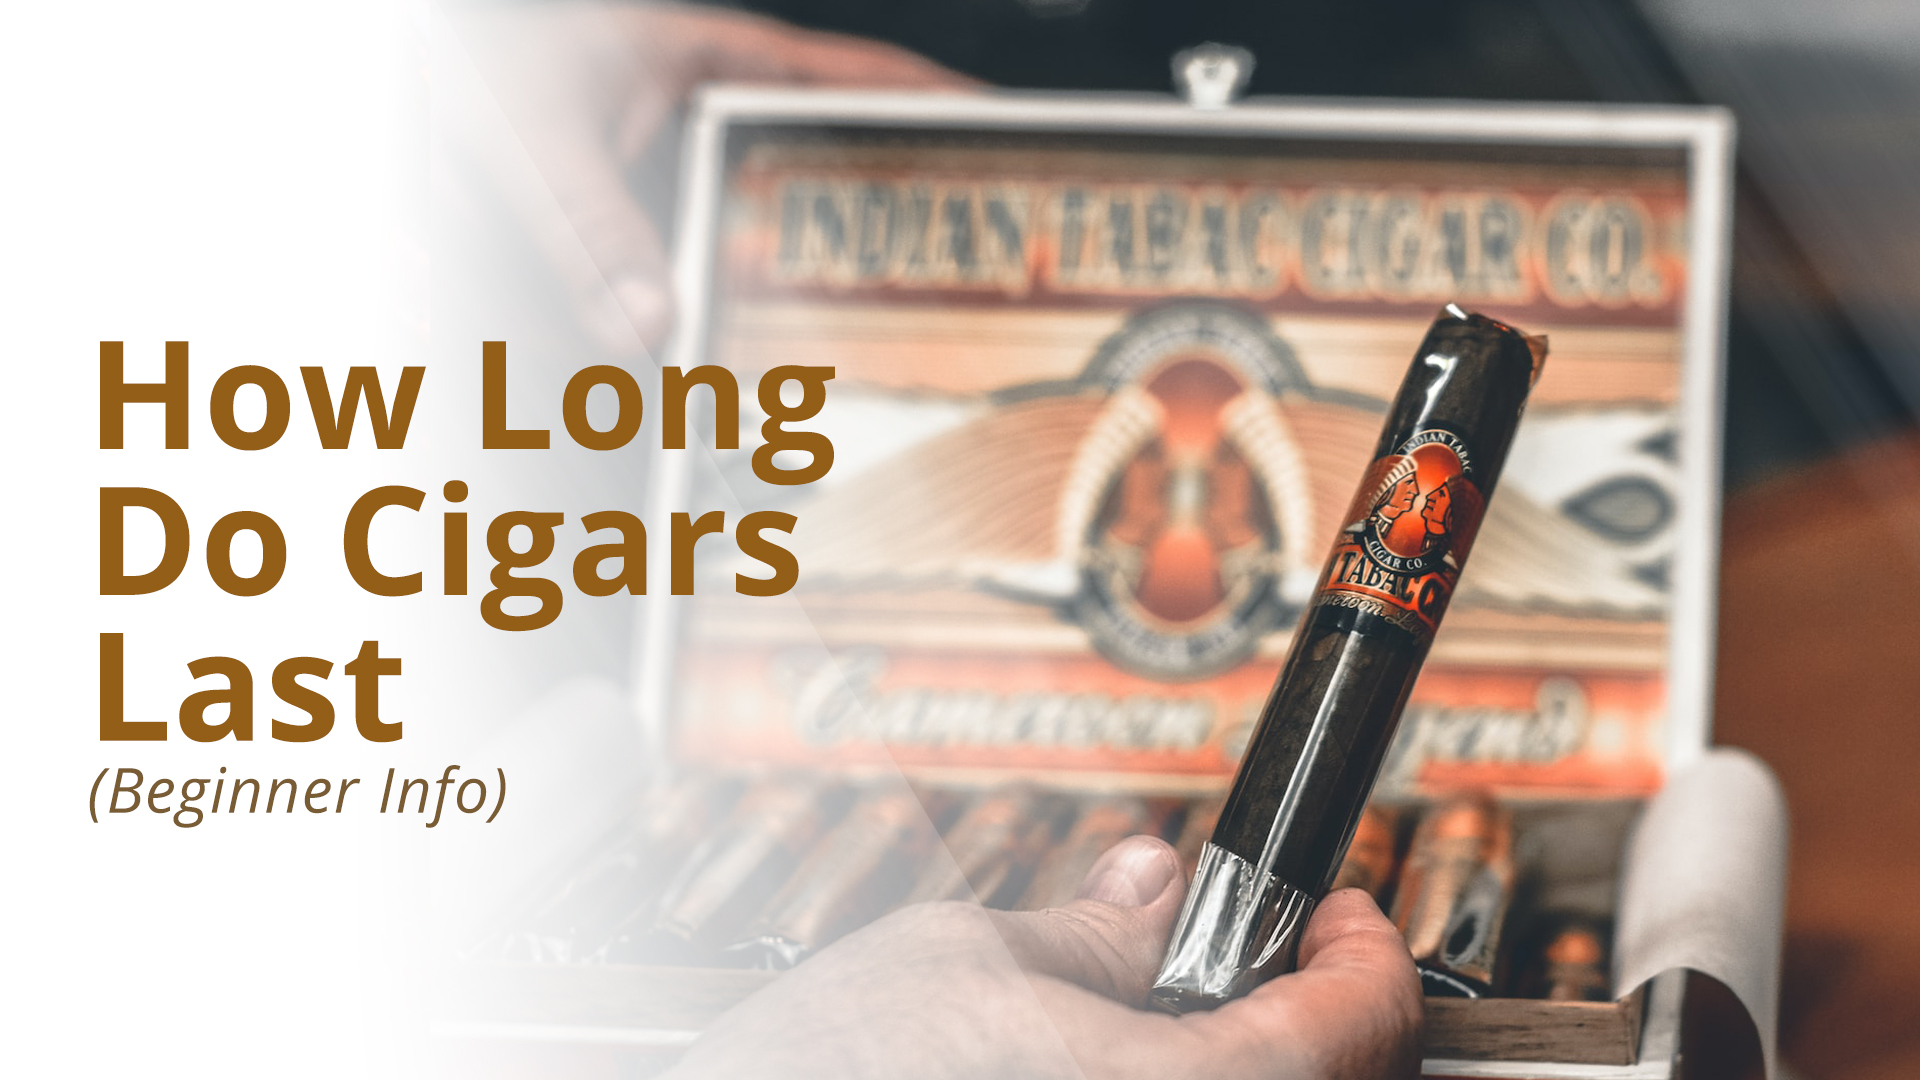 How long do cigars last